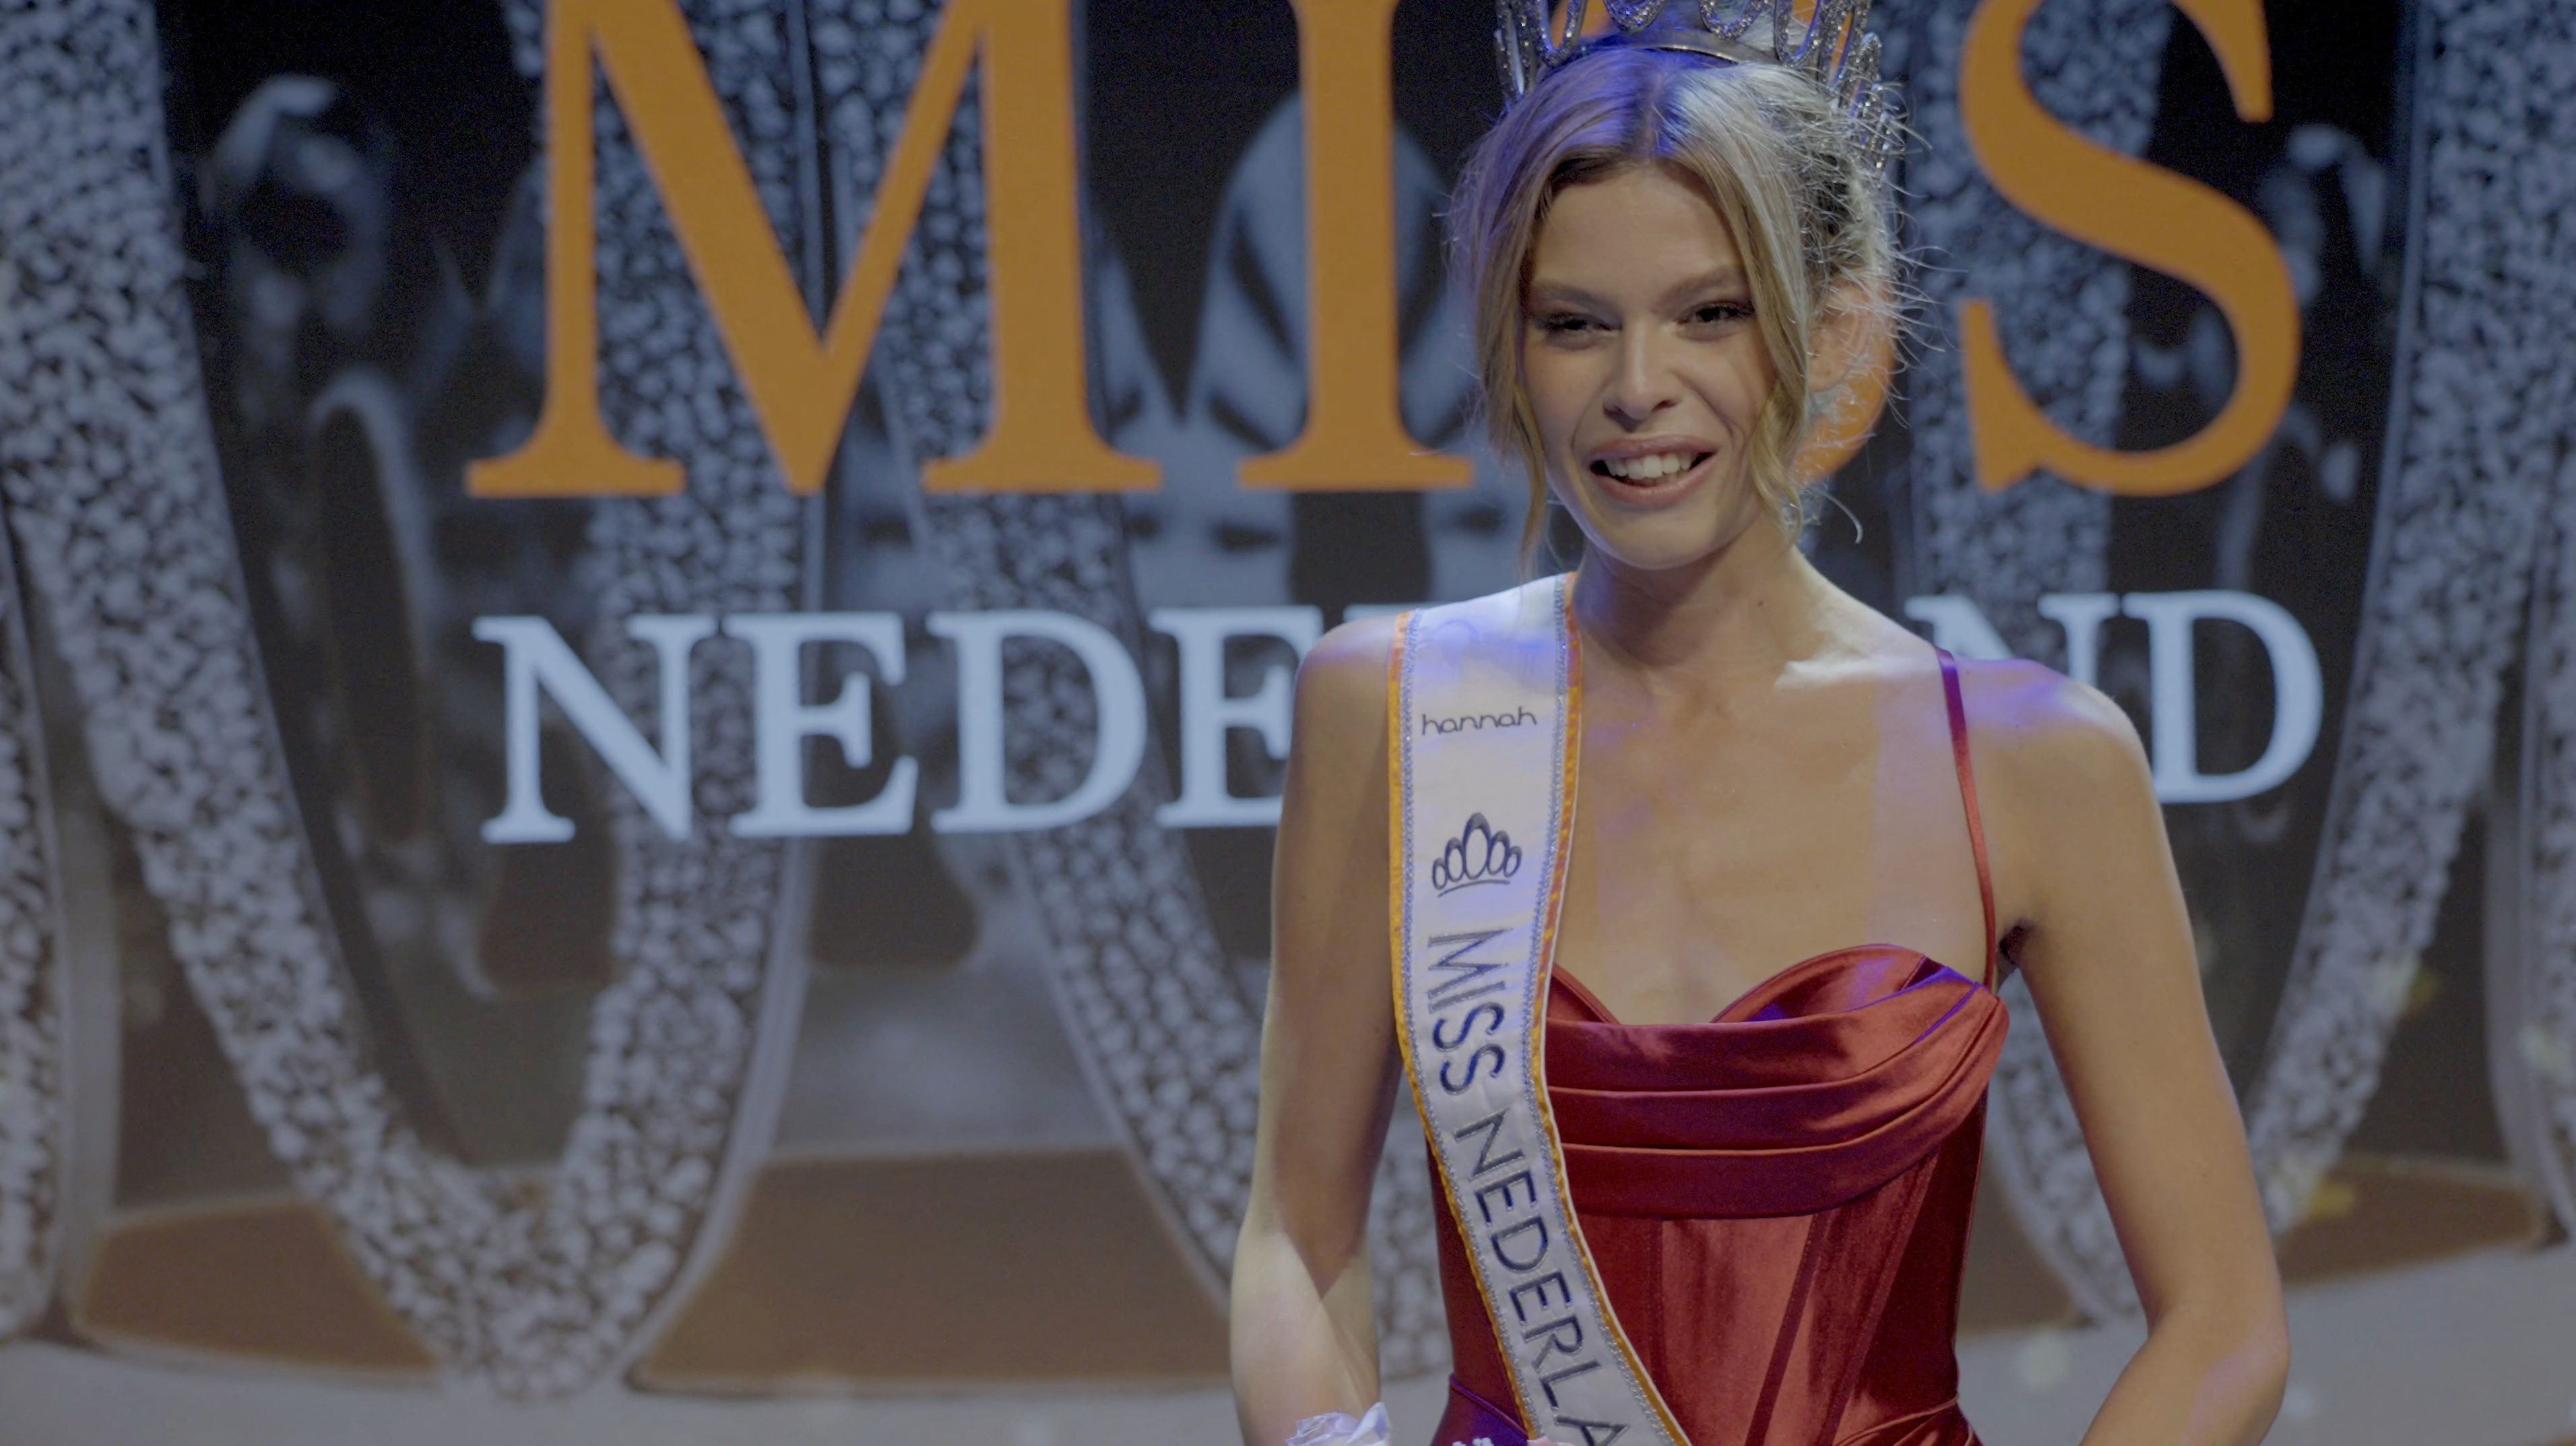 Miss Netherlands' first transgender winner target of hate